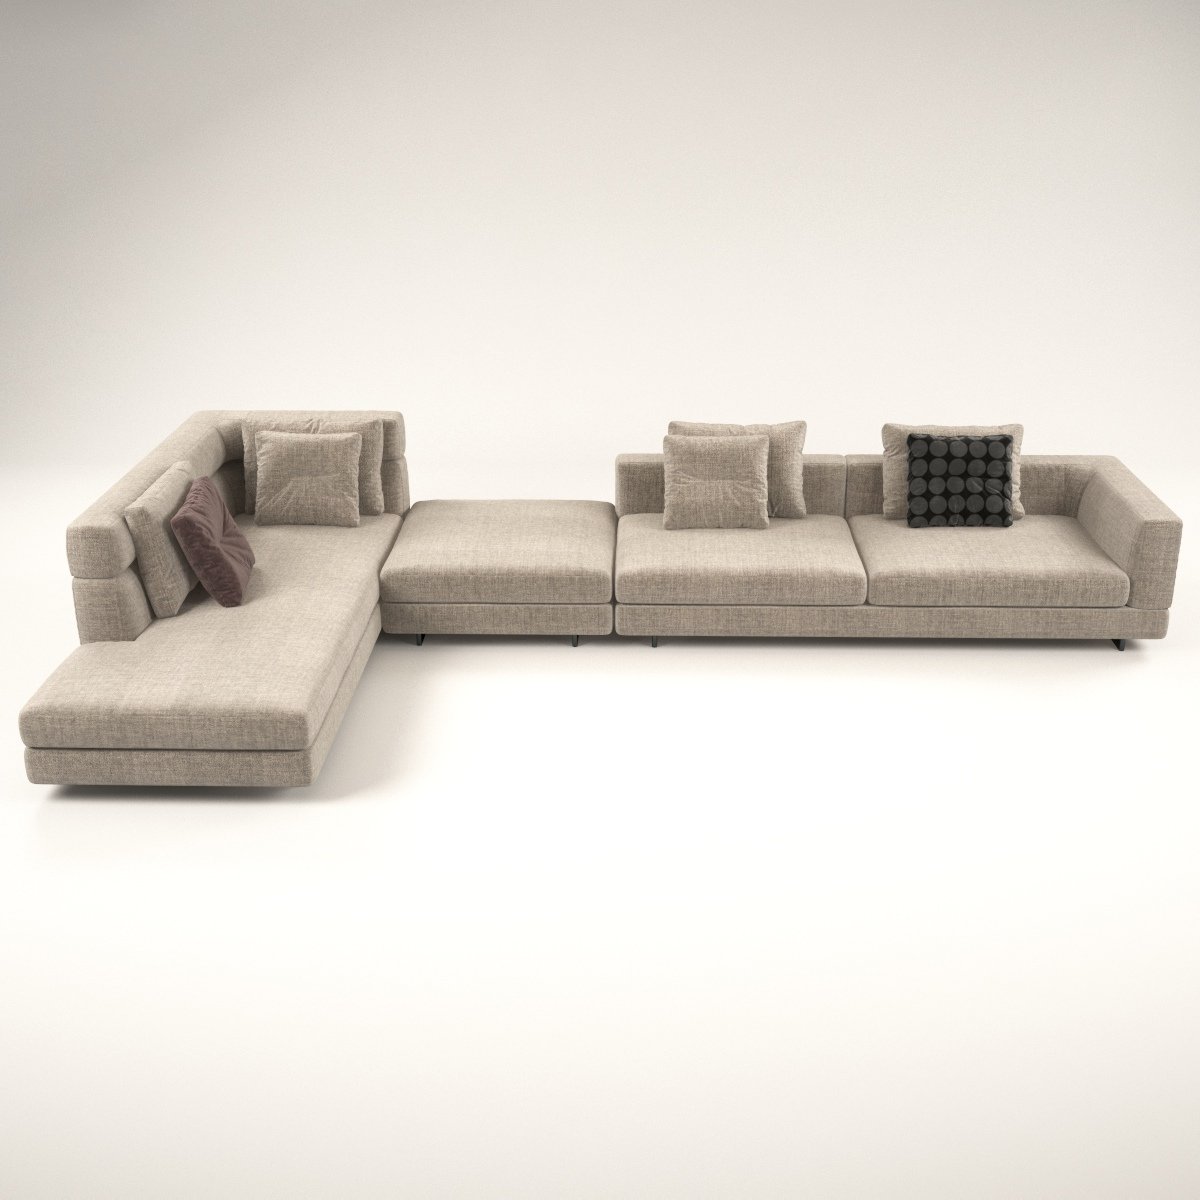 Sofa 3d model. Терра 3 диван. Диван похожий на модель Терра. 3d model Terra.